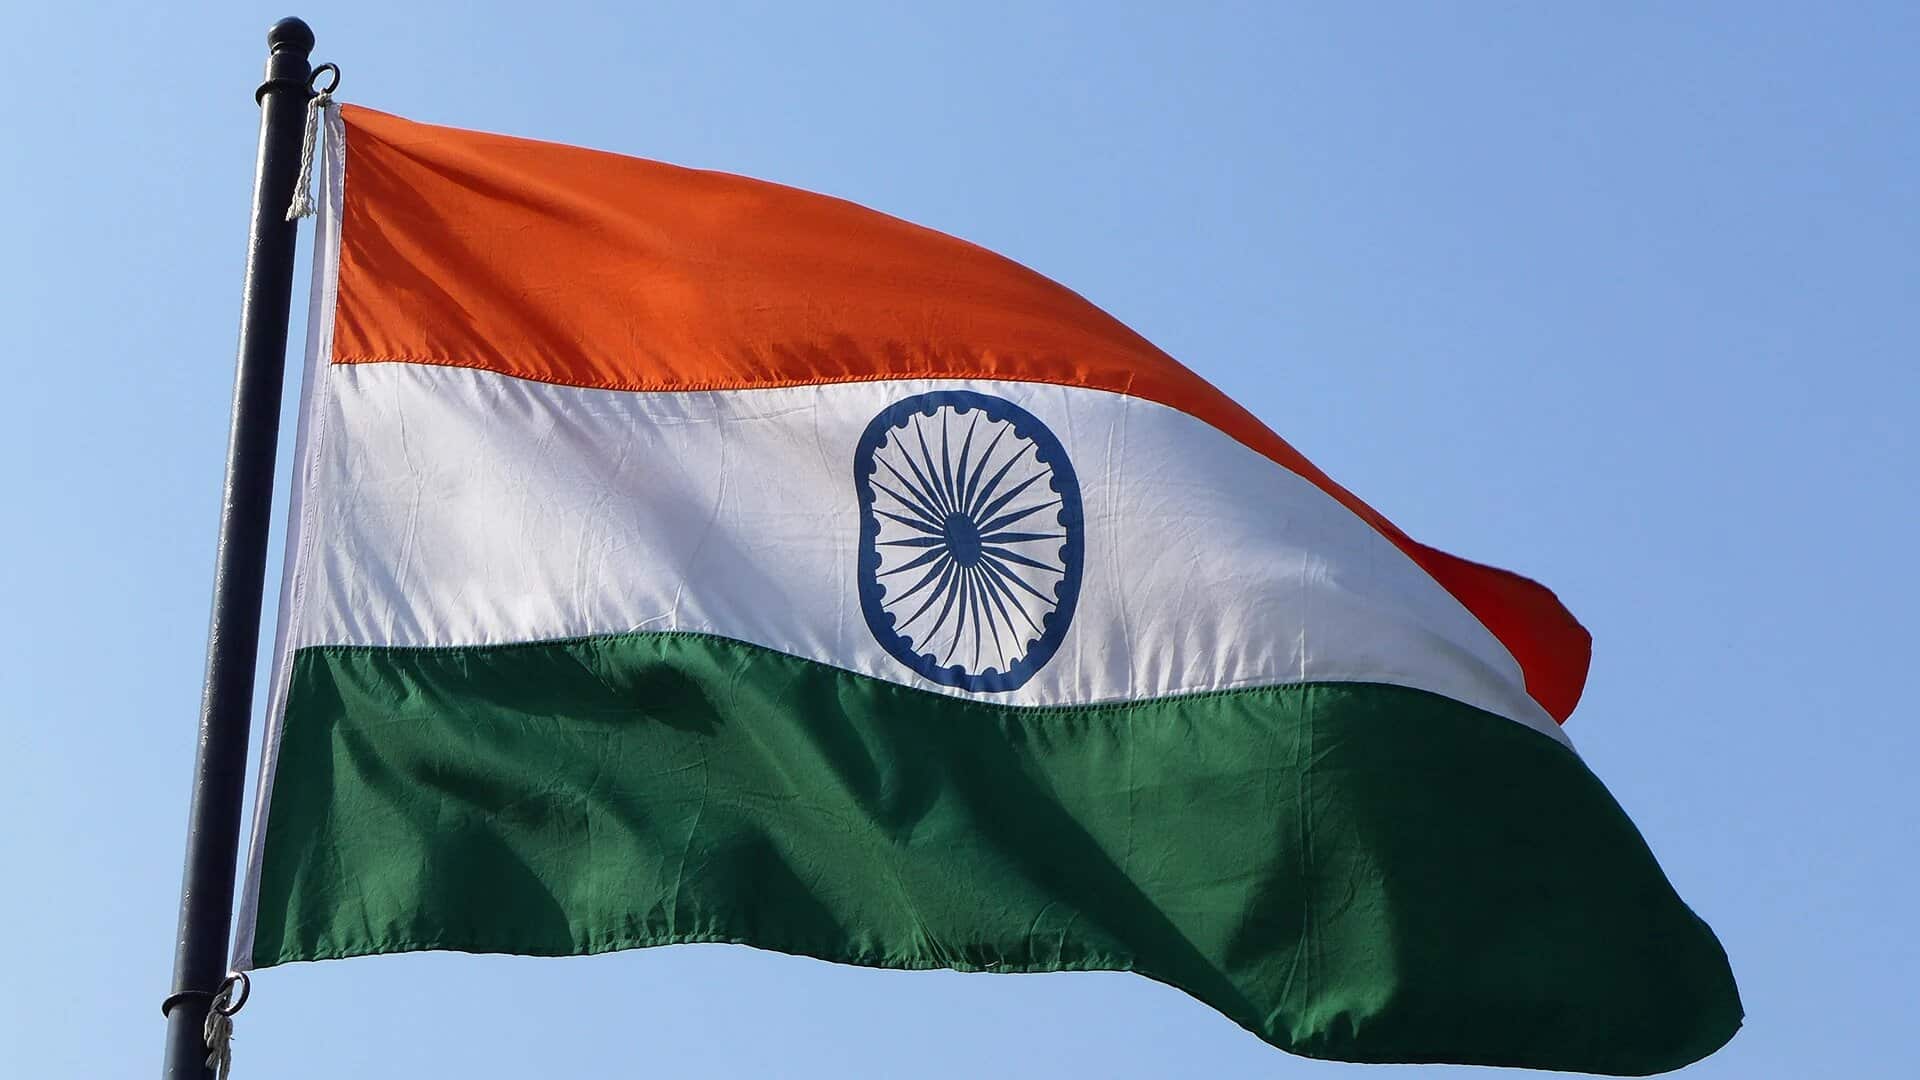 drapeaux de l'Inde